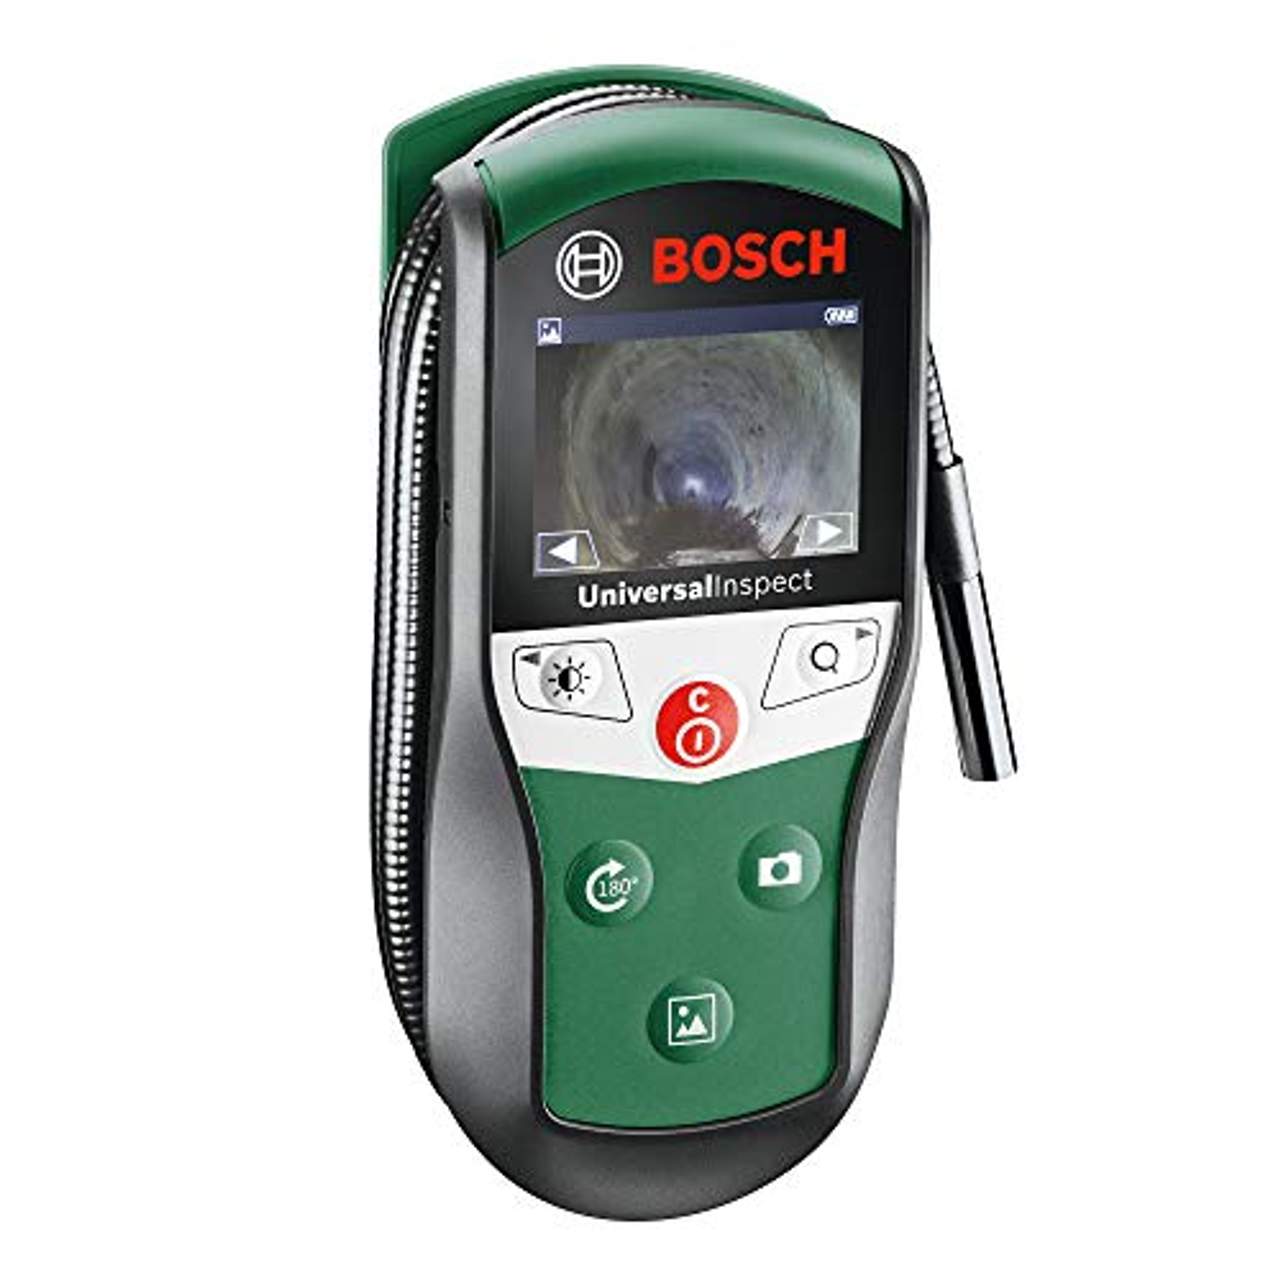 Bosch Inspektionskamera UniversalInspect mit flexiblem 0,95m Kabel und integriertem Speicher